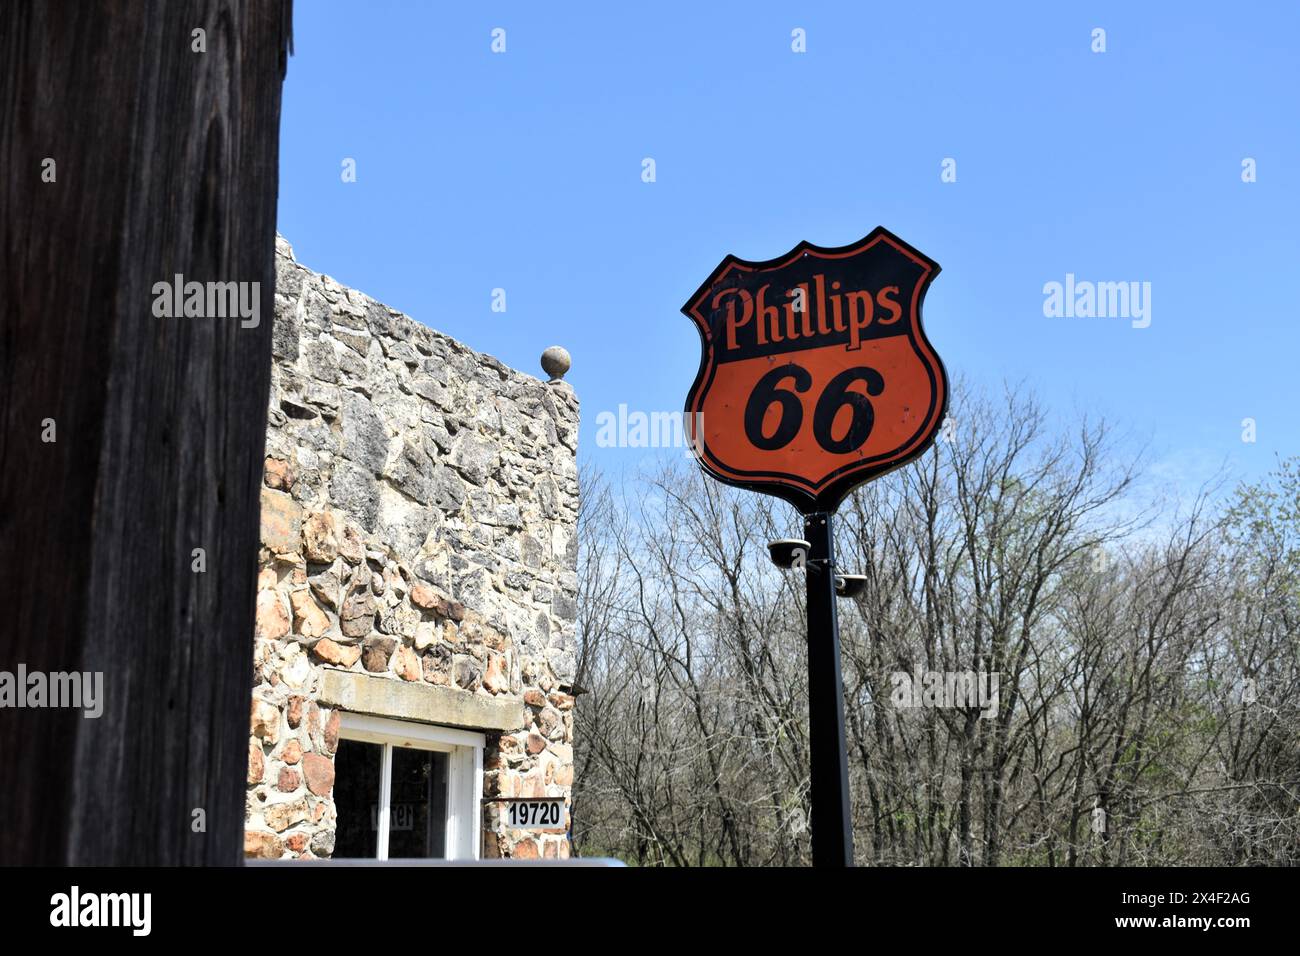 Spencer, Missouri, Stati Uniti, 13-4-24 una vecchia stazione Phillips 66 vanta un'antica insegna nera e arancione Phillips 66. La città vecchia è stata restaurata. Foto Stock